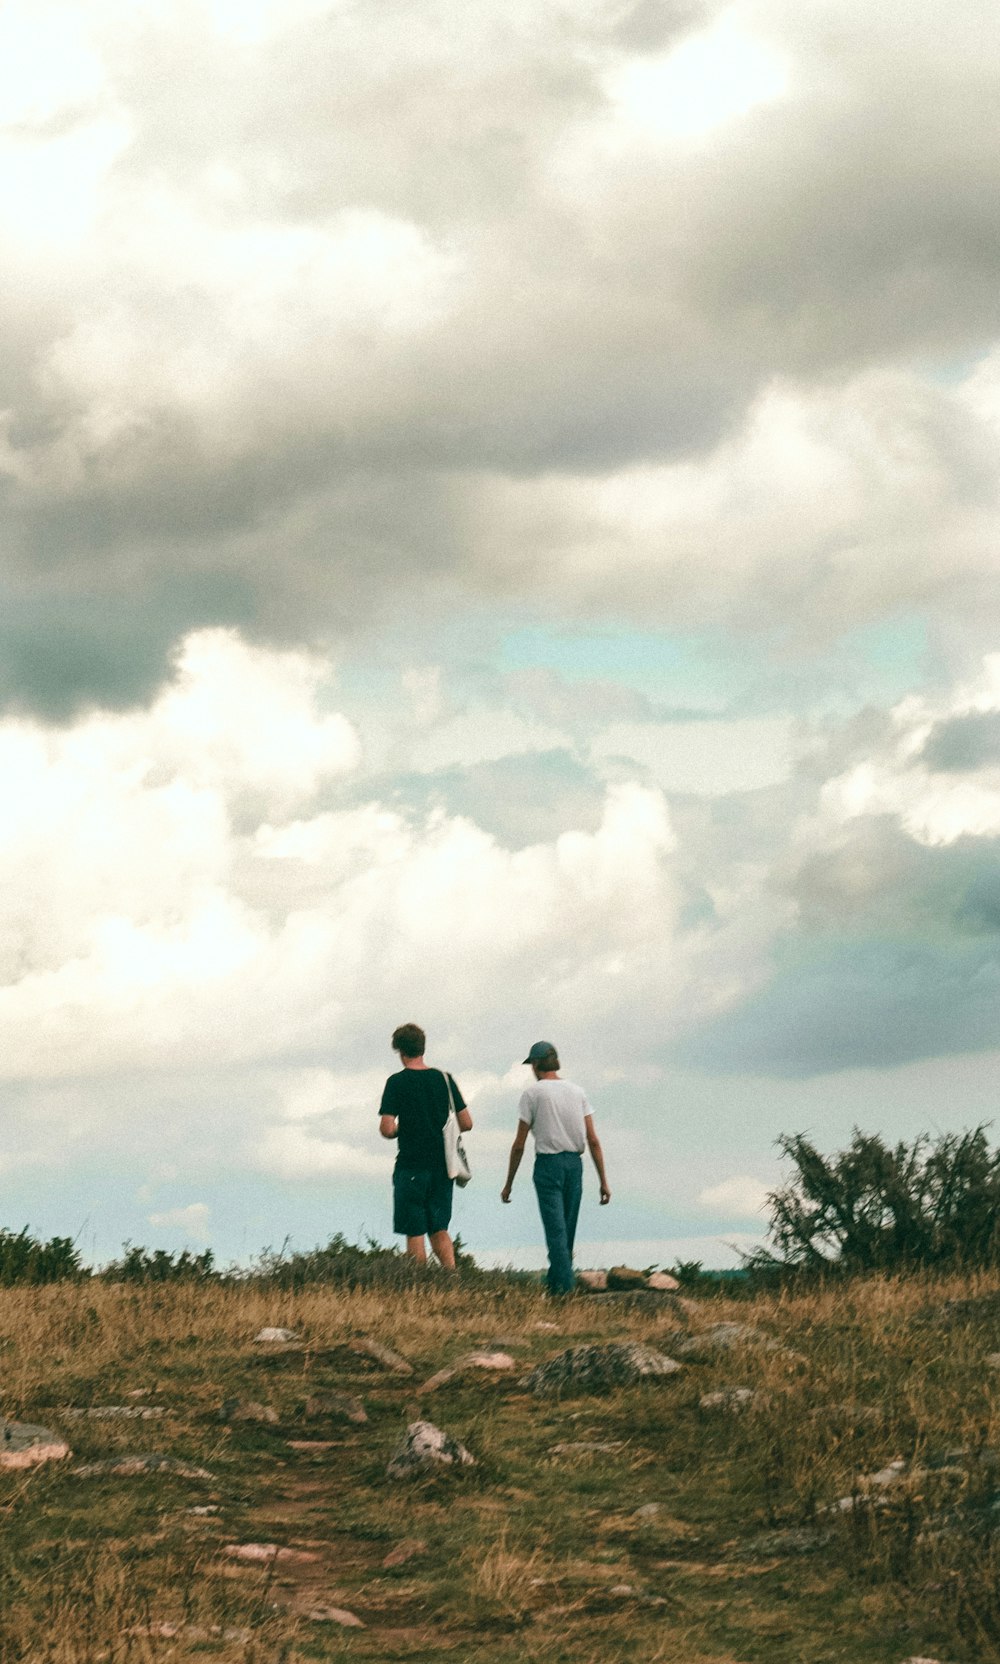 homme et femme marchant sur un champ d’herbe brune sous des nuages blancs pendant la journée